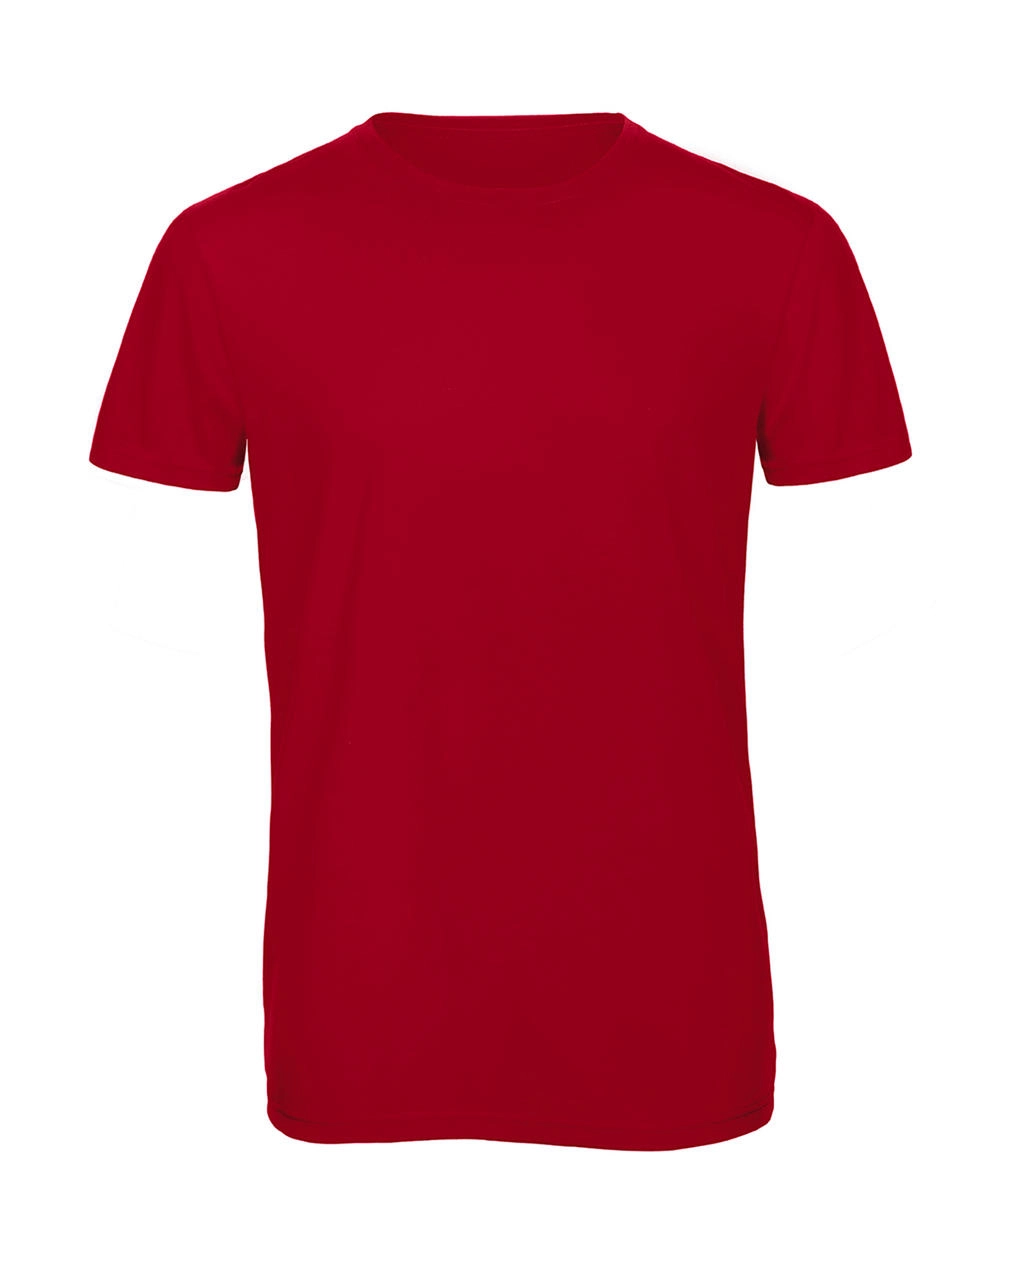 Triblend/men T-Shirt zum Besticken und Bedrucken in der Farbe Red mit Ihren Logo, Schriftzug oder Motiv.